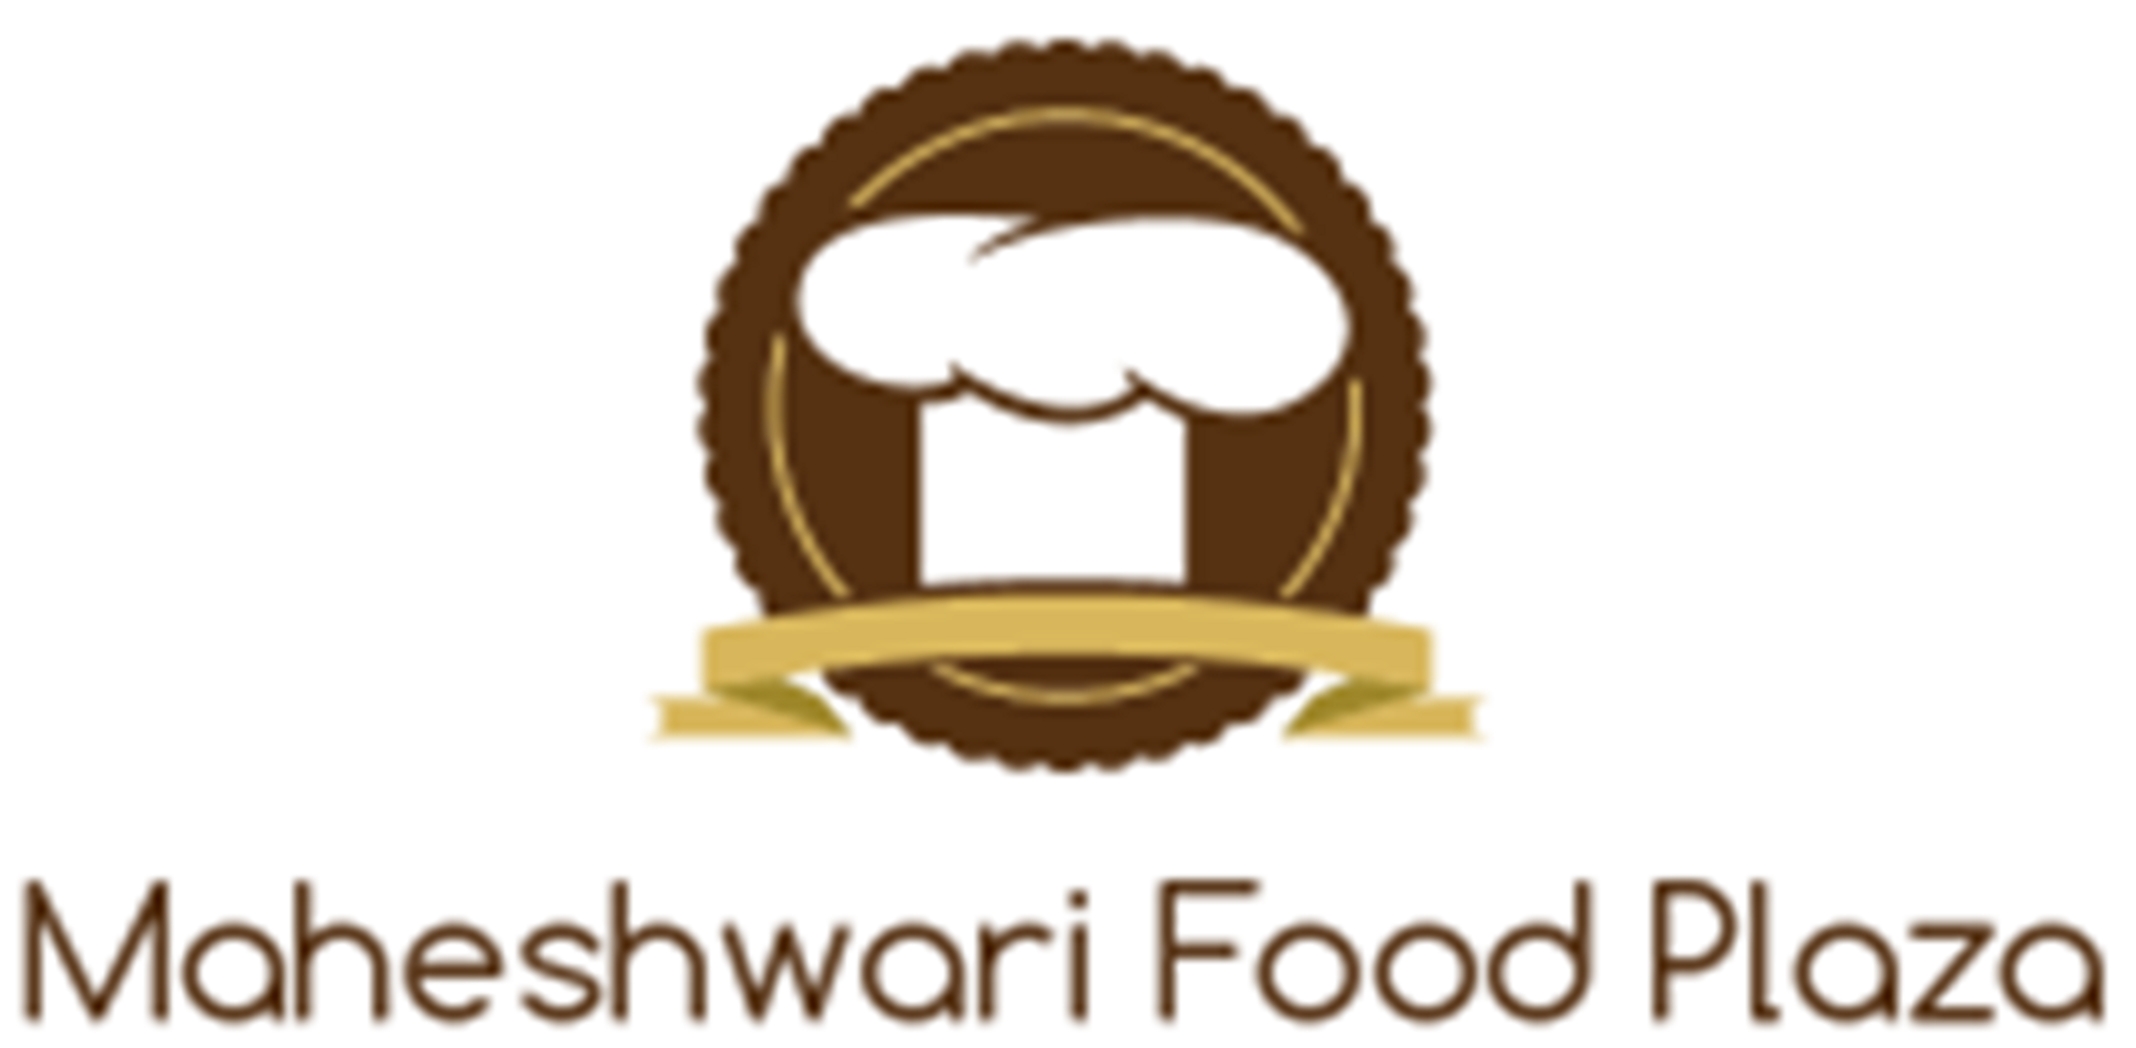 Maheshwari Food Plaza